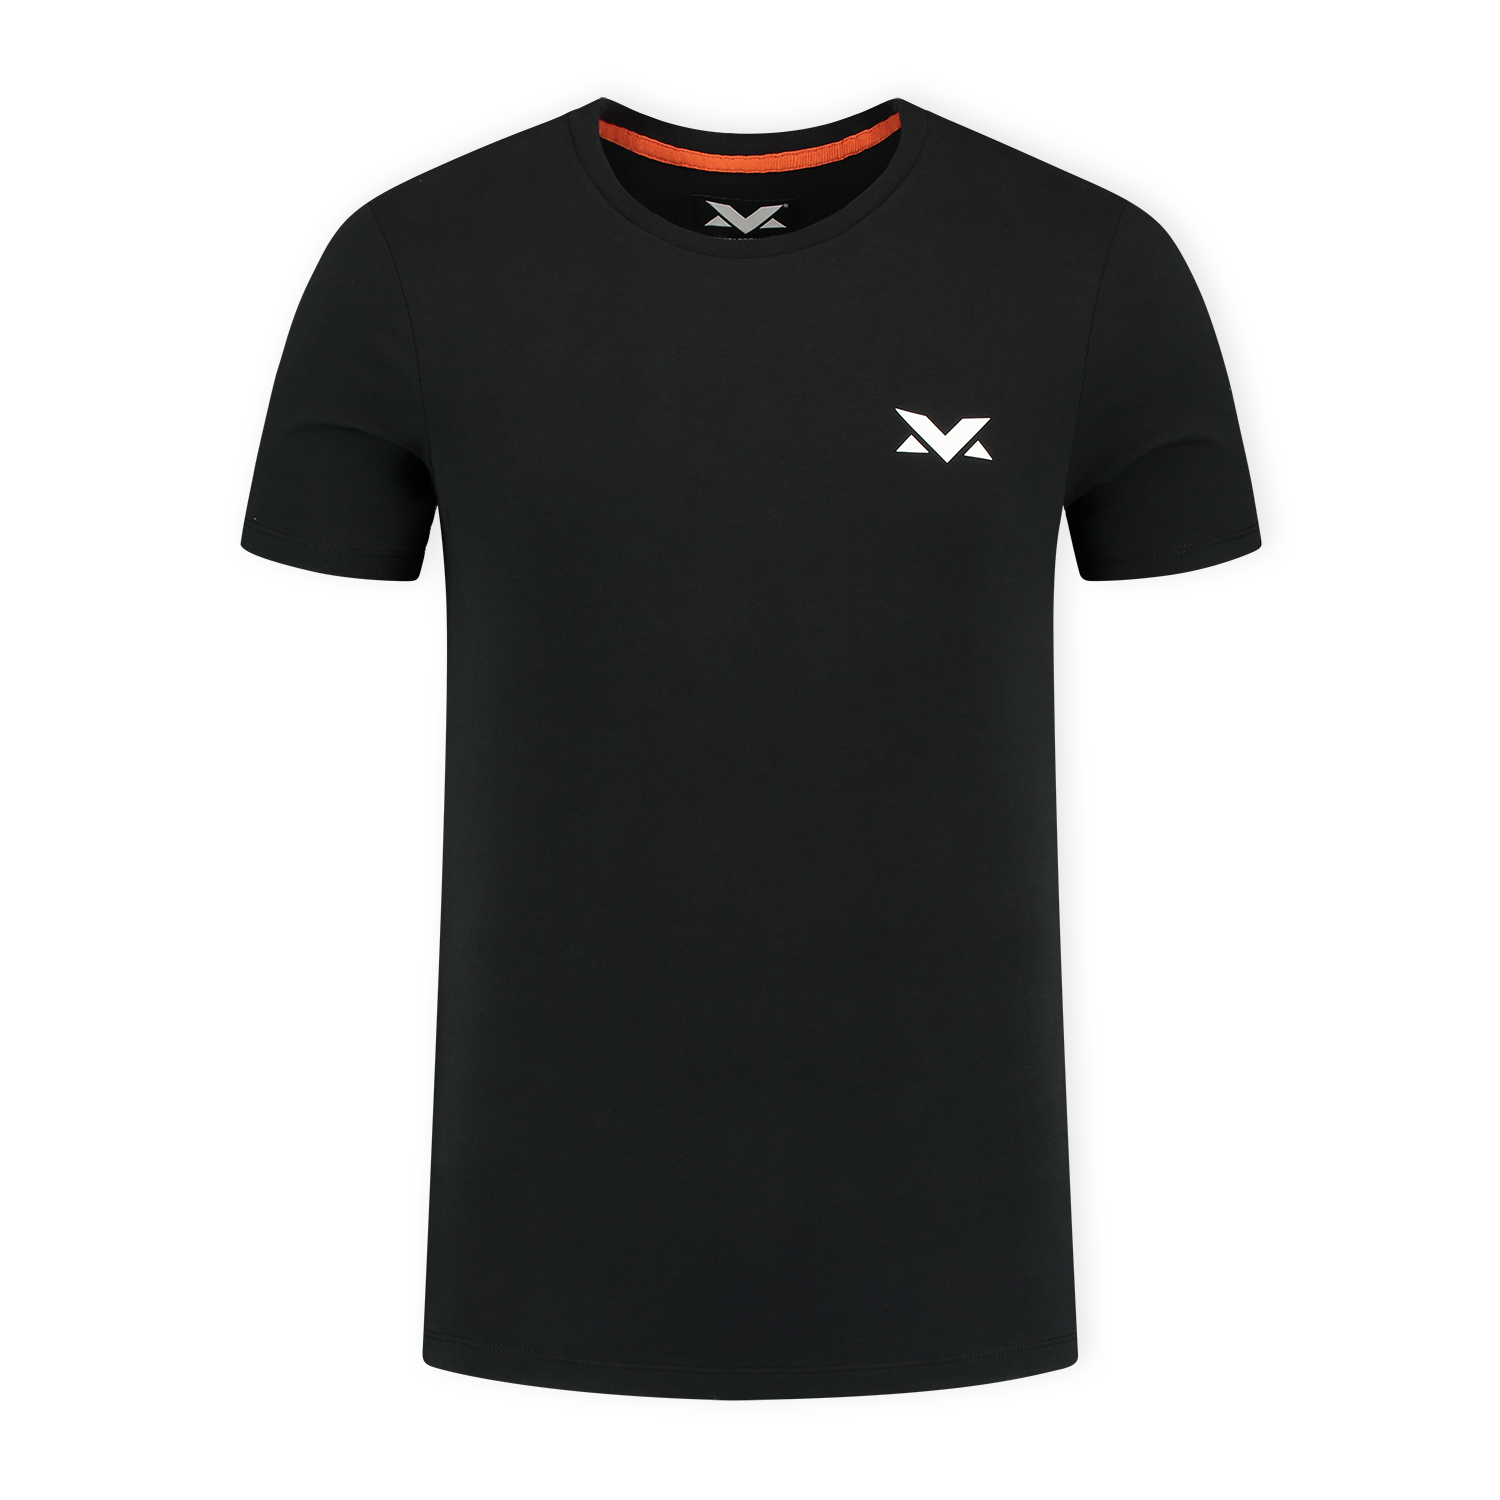 MV T-shirt The Limits - Zwart - XXL - Max Verstappen